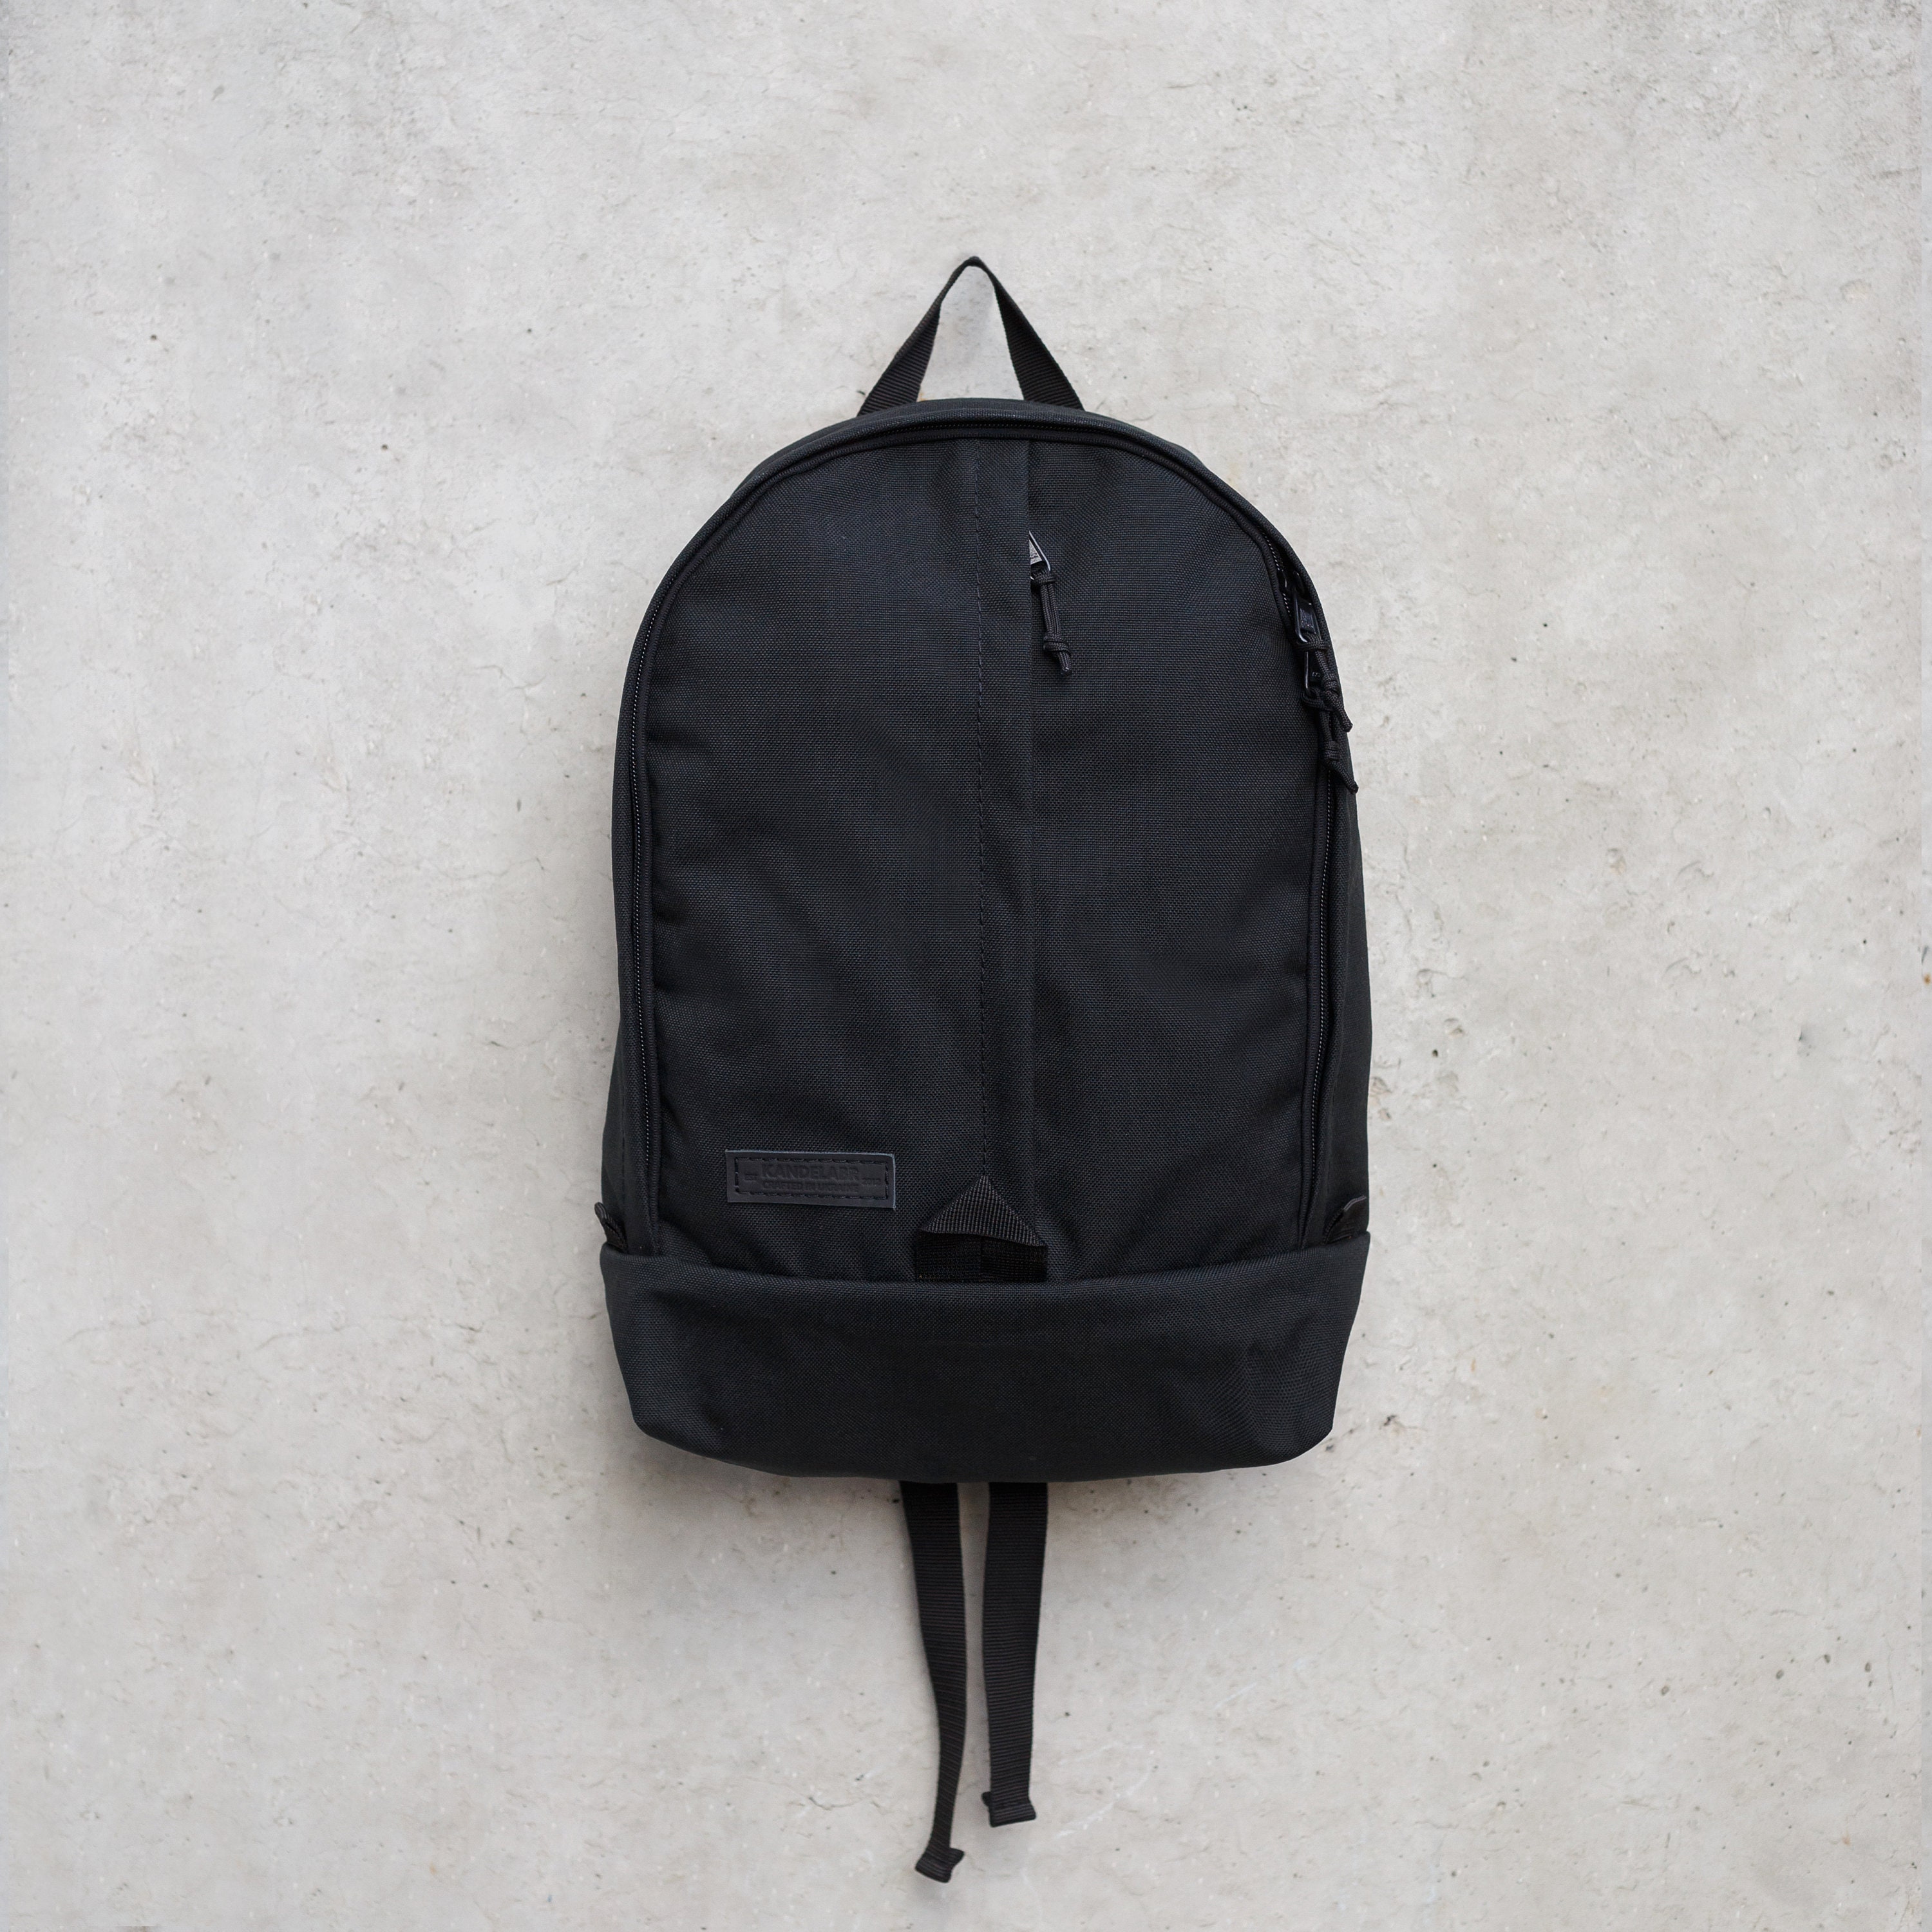 Daypack Black Backpack / Total Black Pack - Etsy